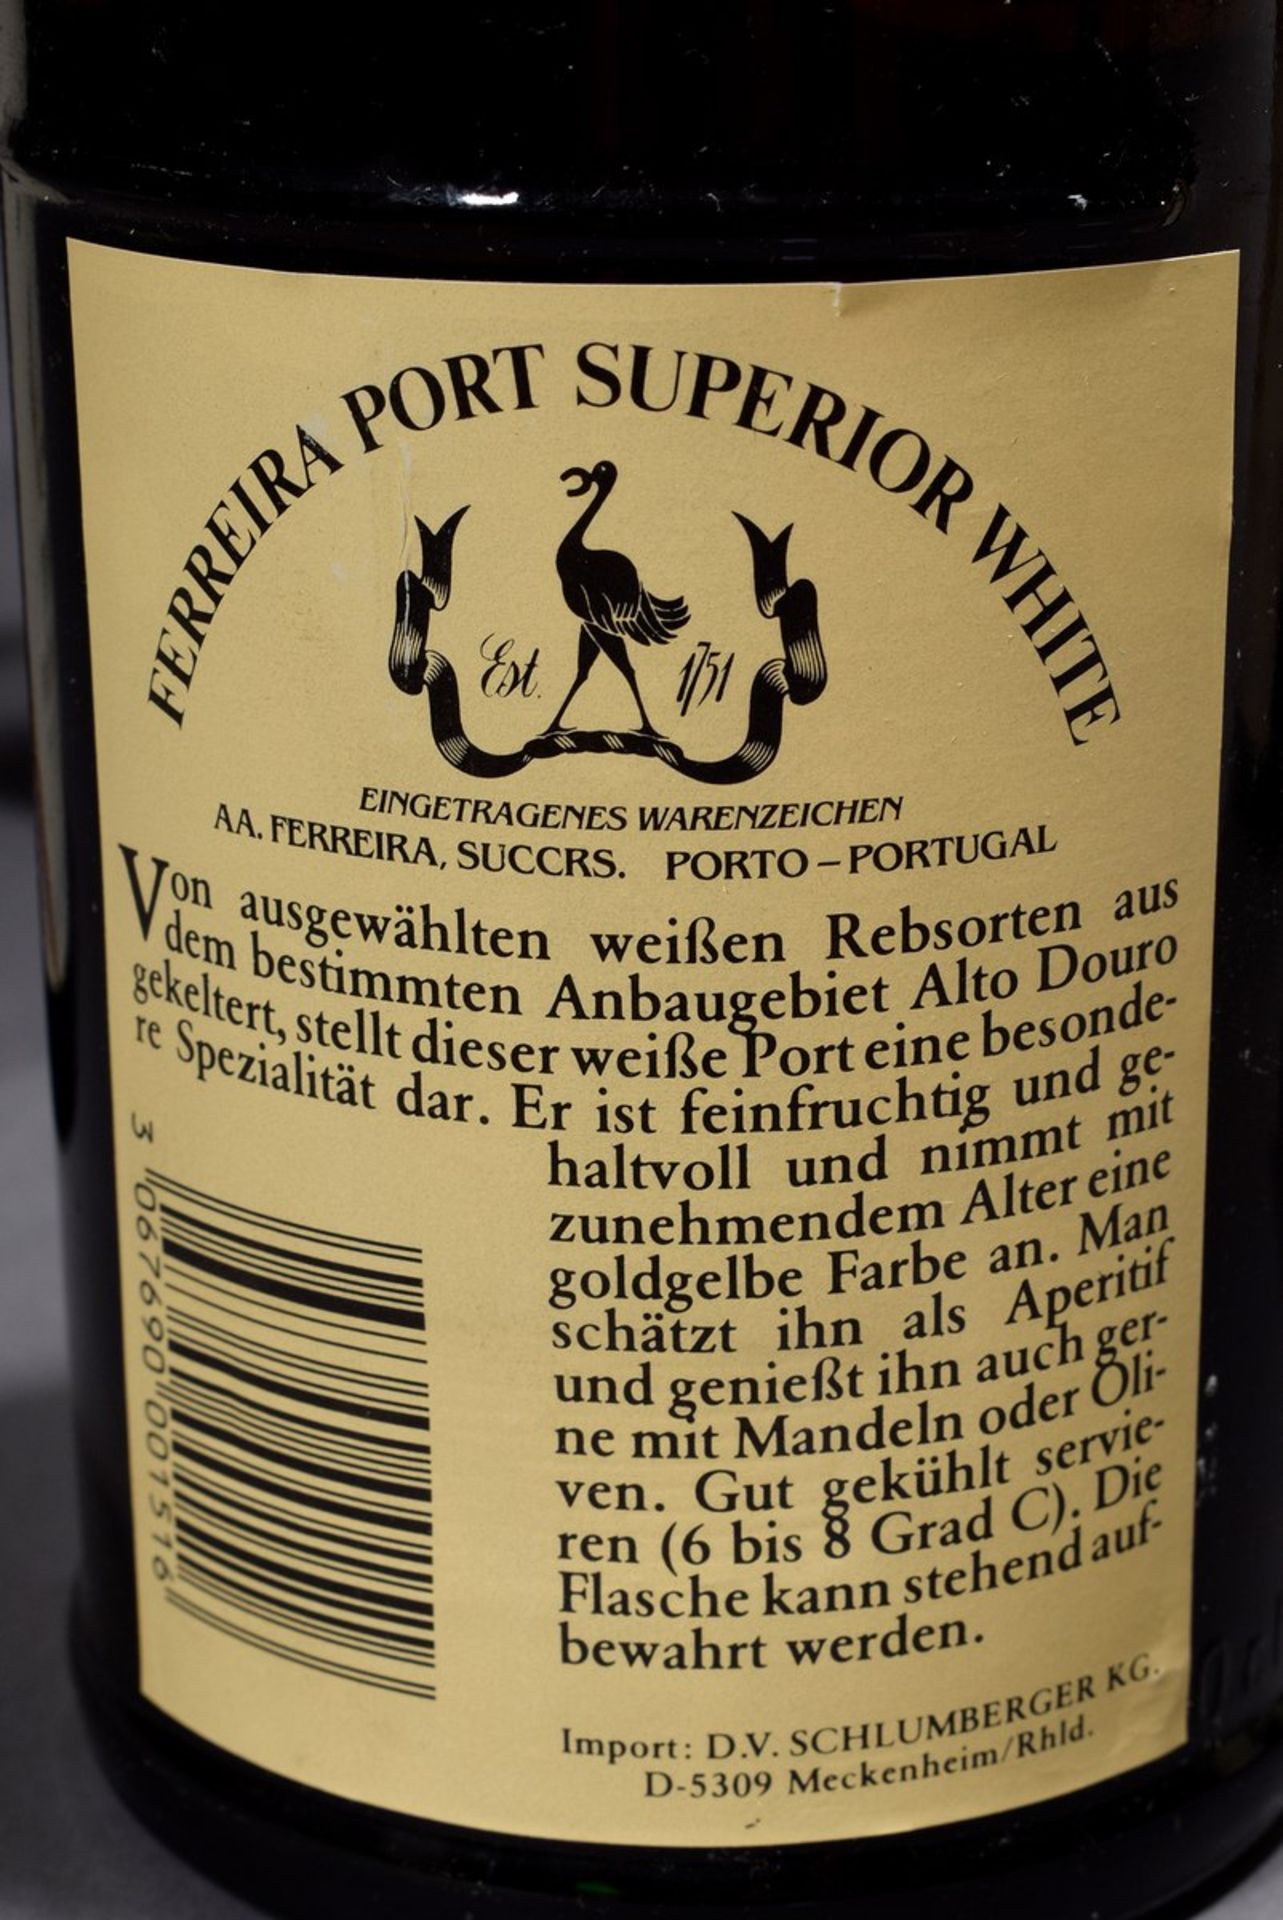 8 Flaschen Portwein "Ferreira Port Superior White", Portugal, kein Jg., 20. Jh., enthält Sulfite8 - Bild 3 aus 5